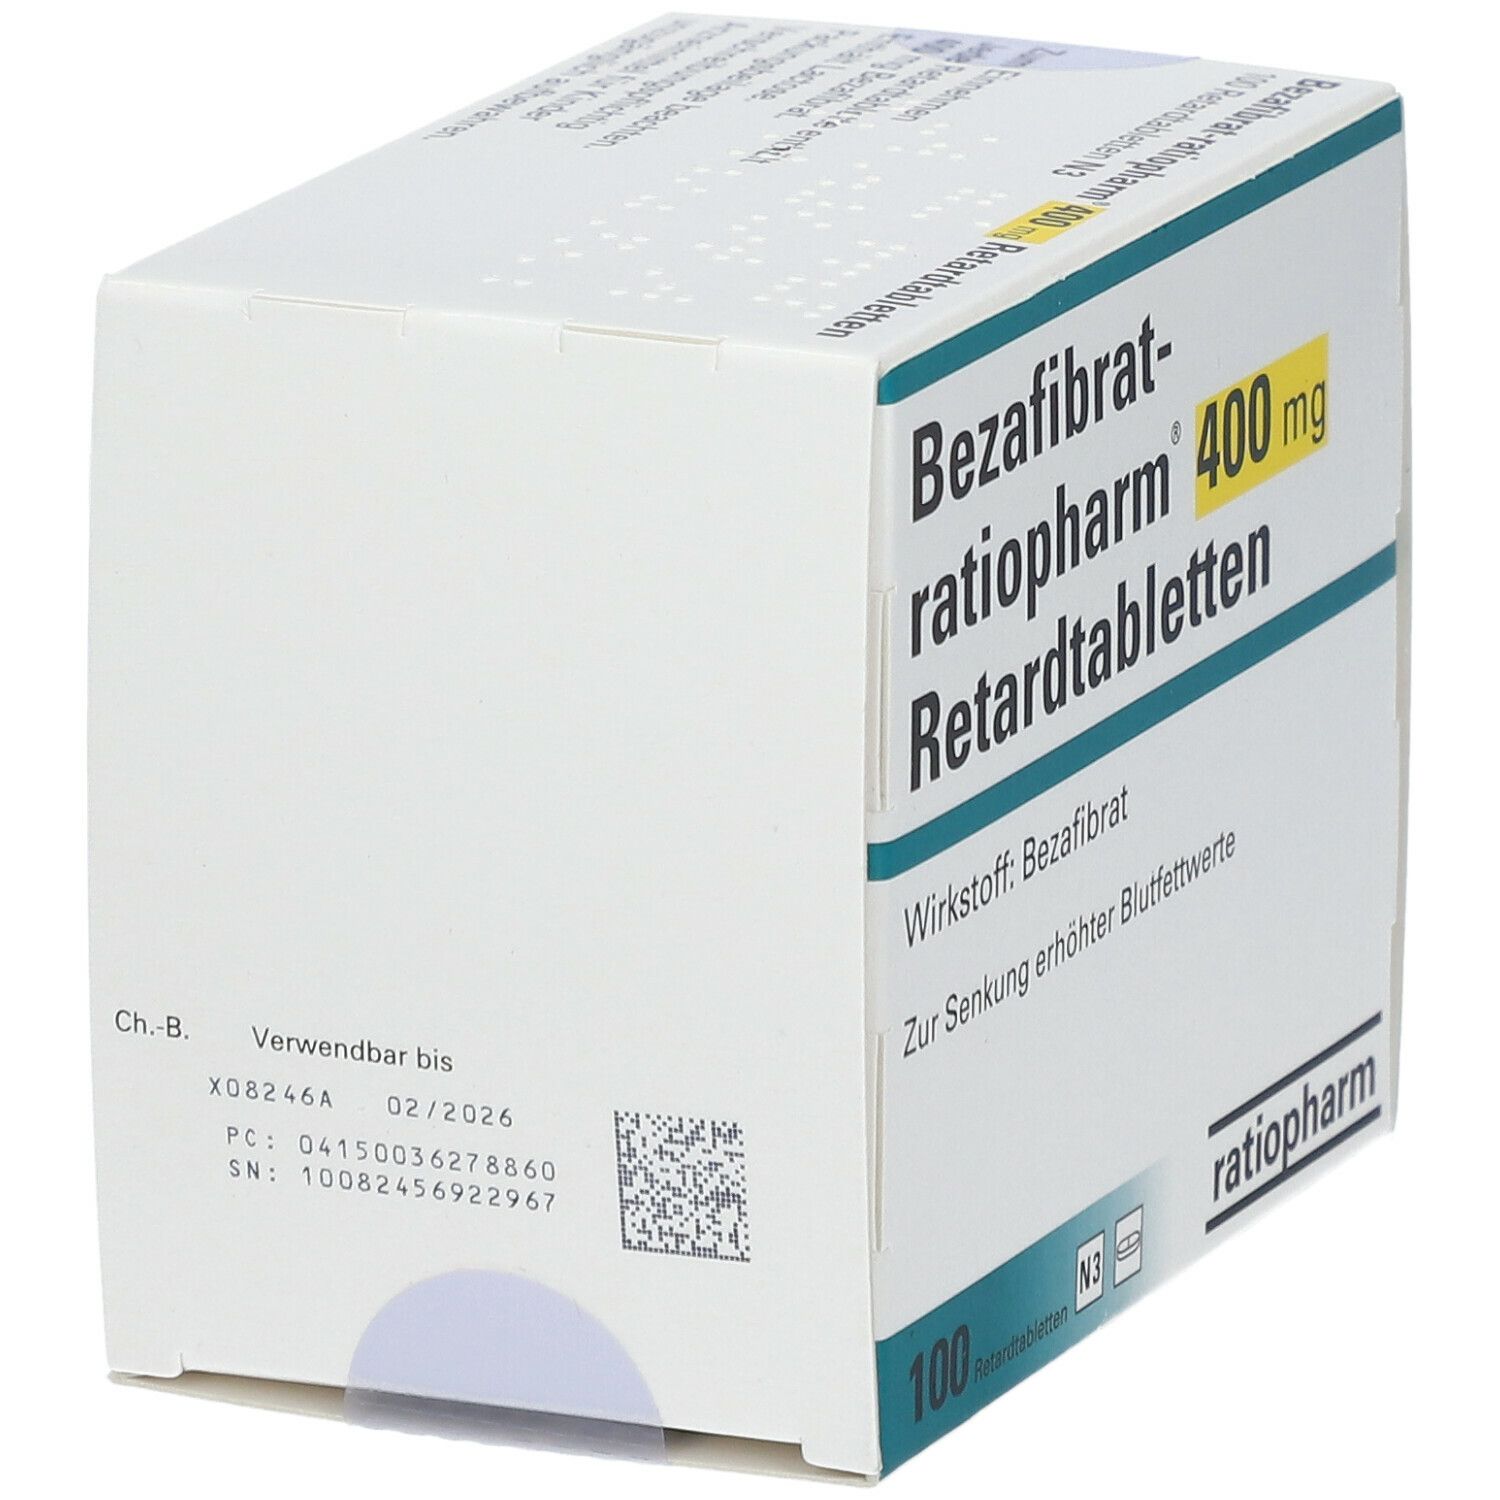 Bezafibrat-ratiopharm® 400 mg